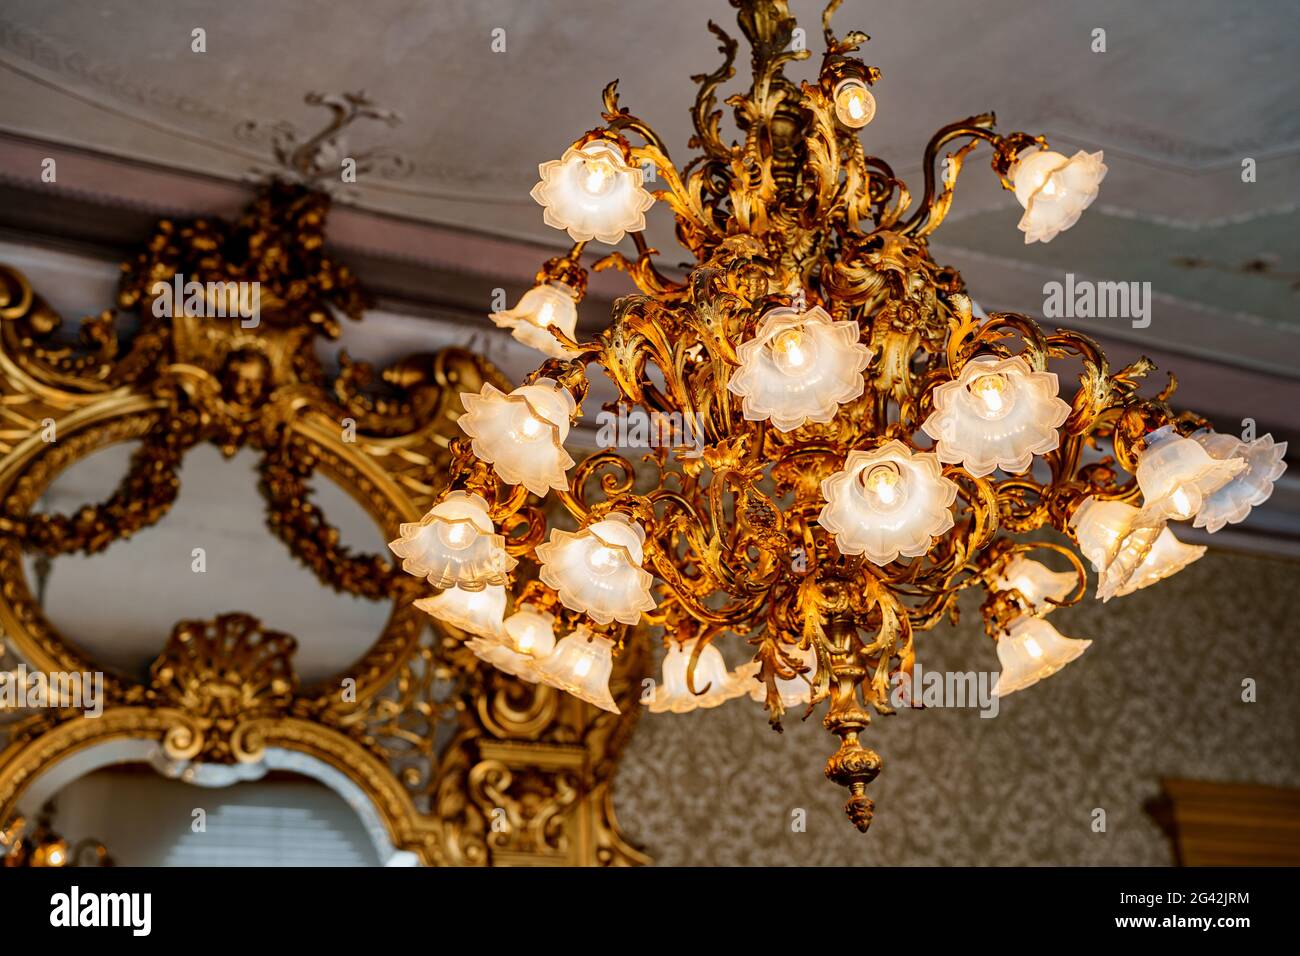 Großer goldener Kronleuchter mit floralen Farbtönen und floristischen Glühbirnen. Vor dem Hintergrund eines antiken Spiegels mit einem geschnitzten Stockfoto